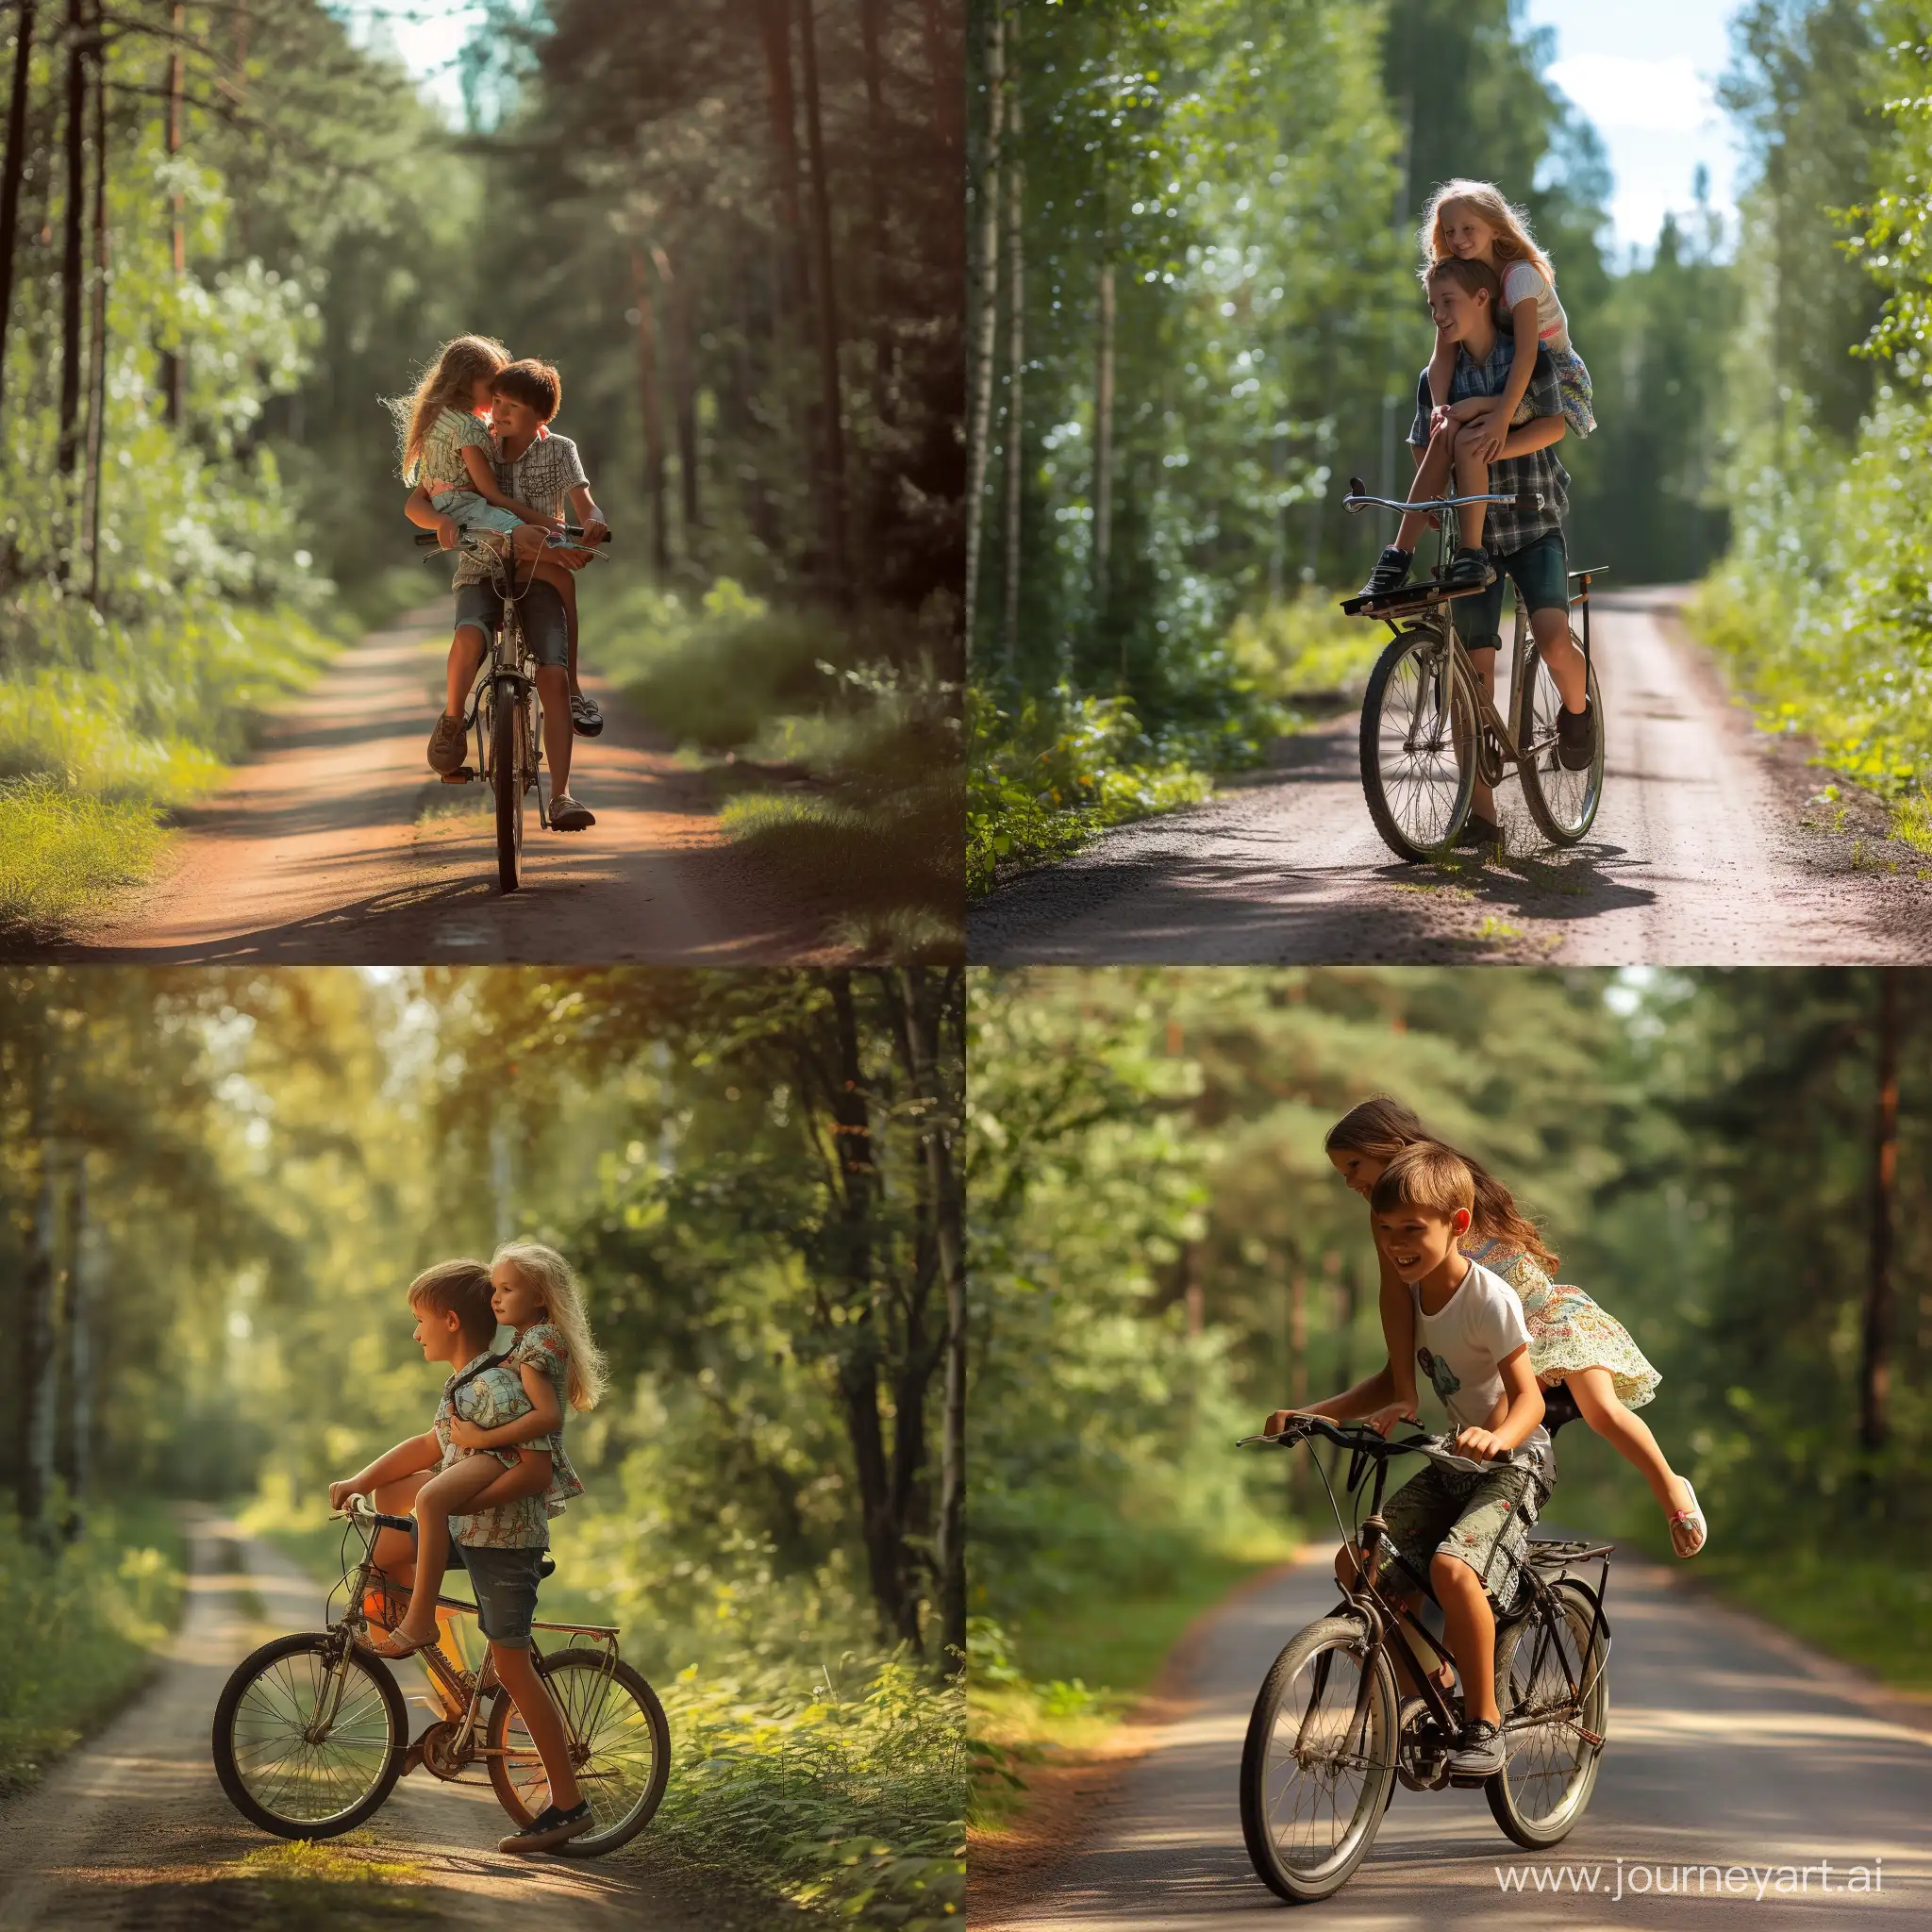 Мальчик везёт девочку на заднем багажнике велосипеда по лесной дороге, весёлое настроение, летний солнечный день, фотография, гиперреализм, высокое разрешение